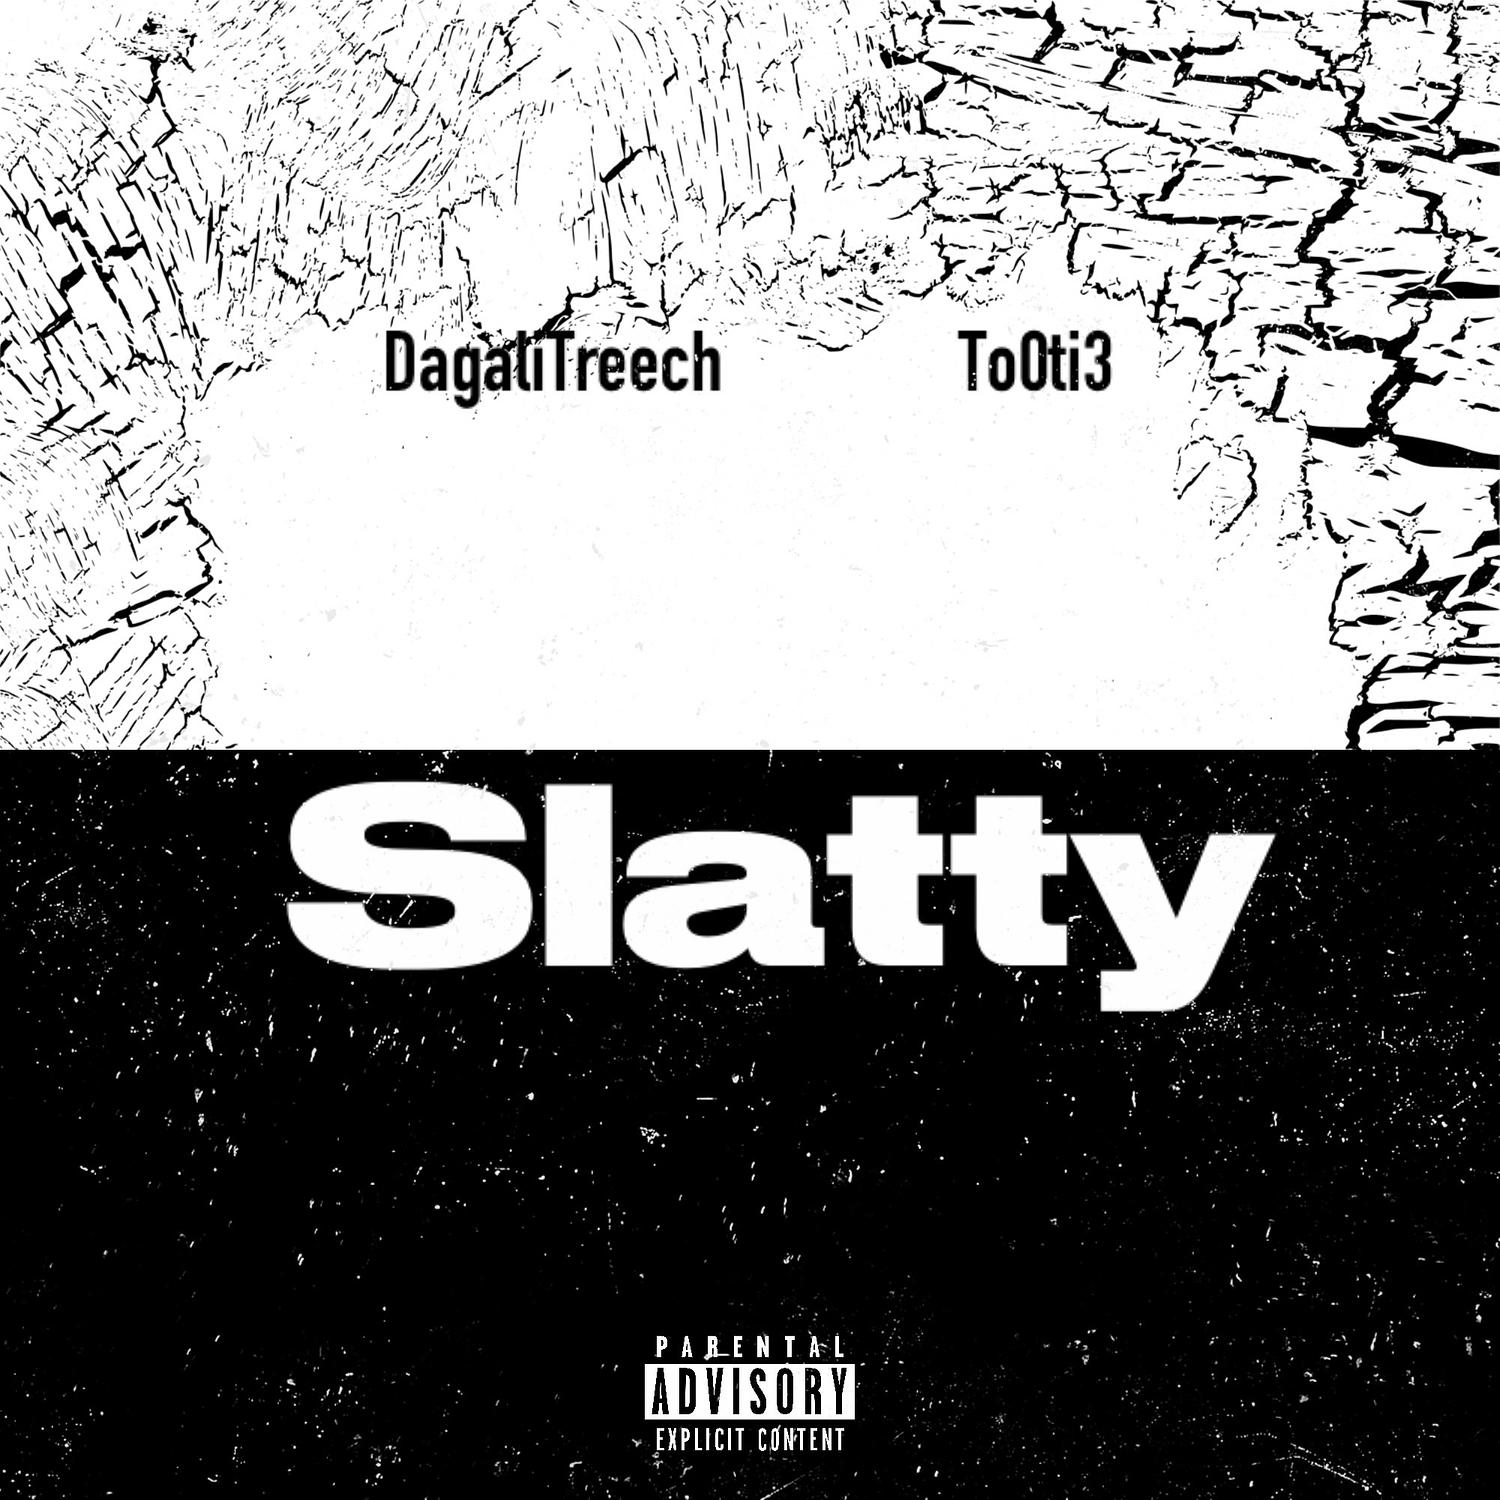 DagaliTreech - Slatty